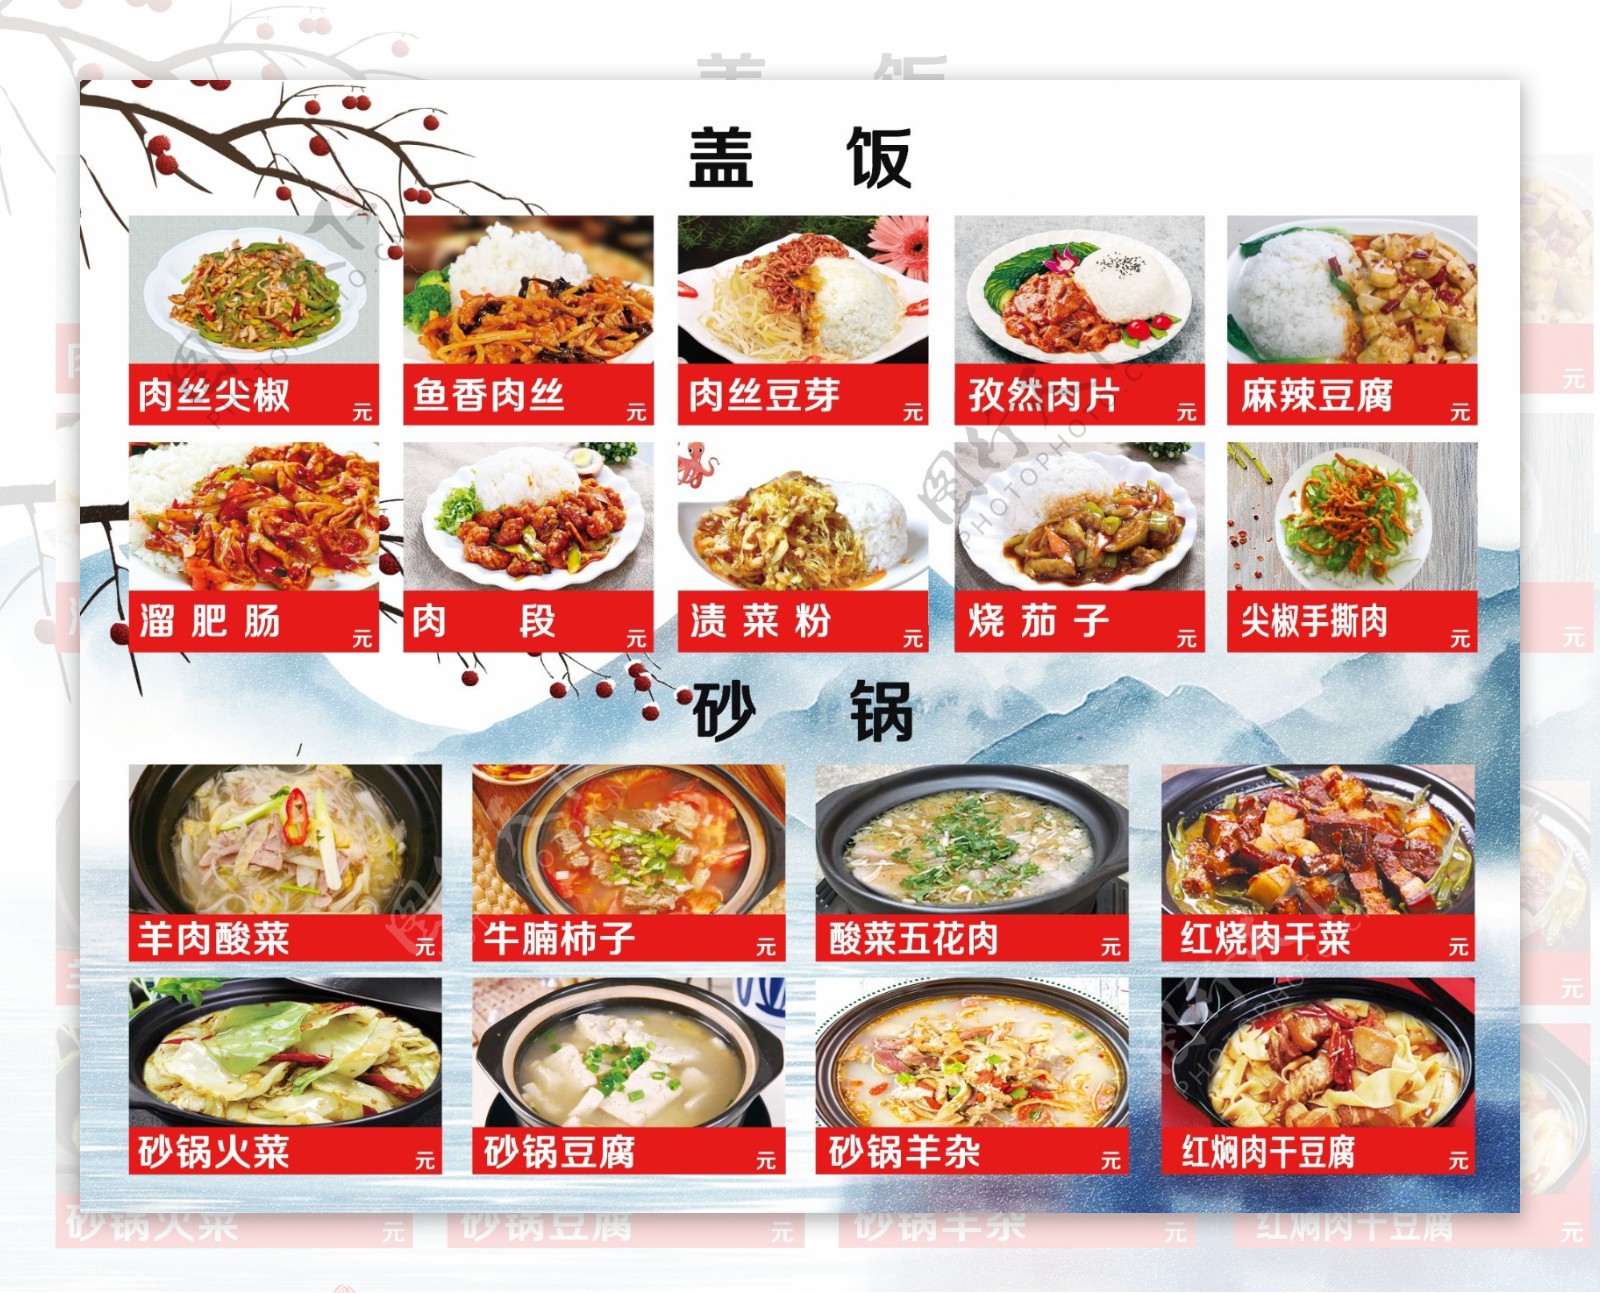 砂锅盖饭米饭盖饭菜牌菜单图片